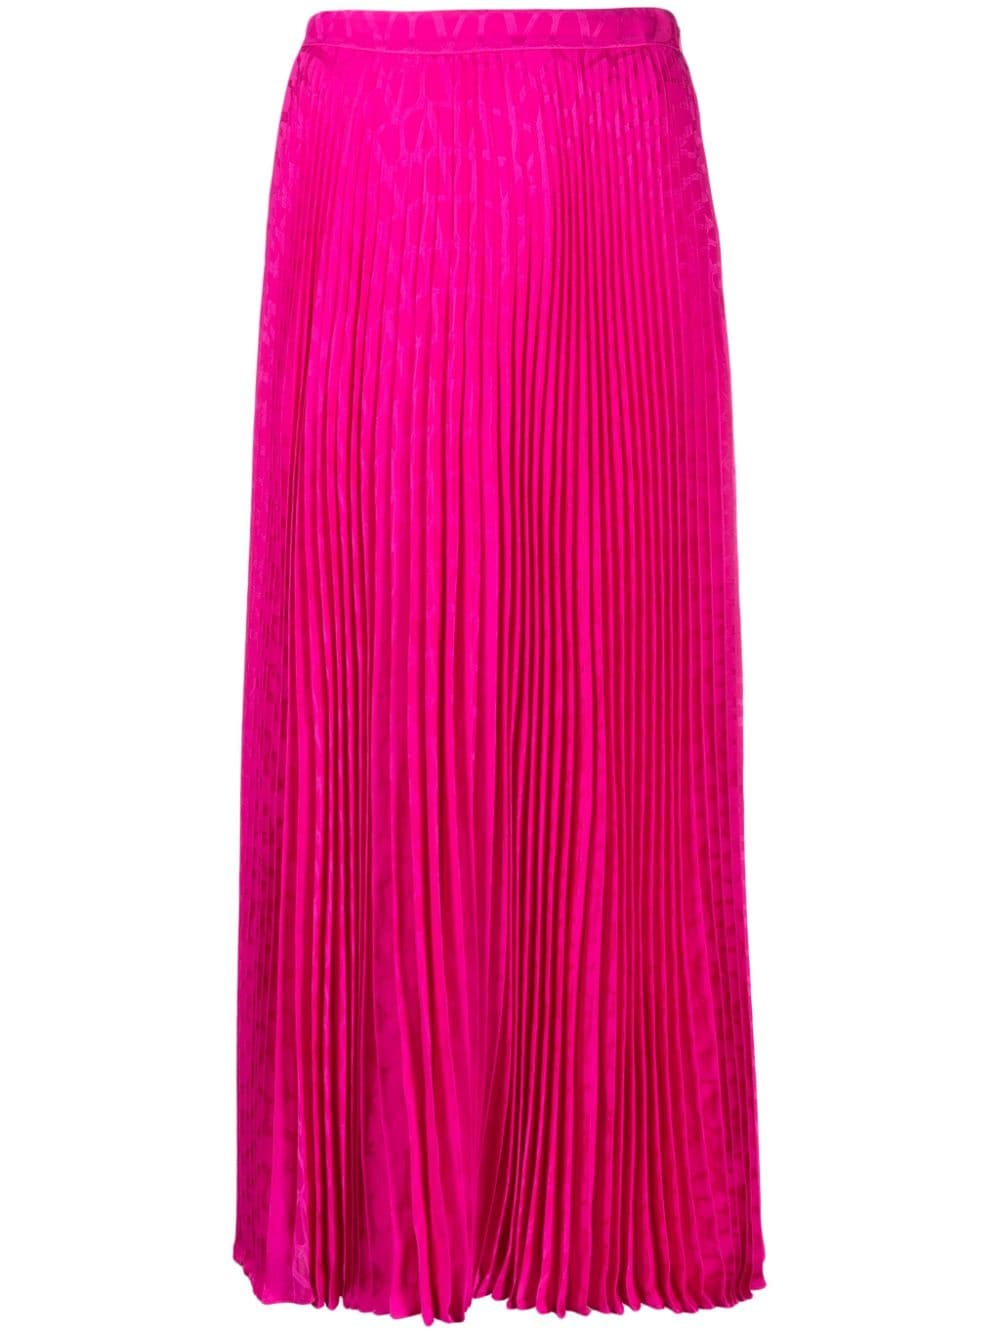 华丽粉红色褶皱丝绸中长裙 - FW23